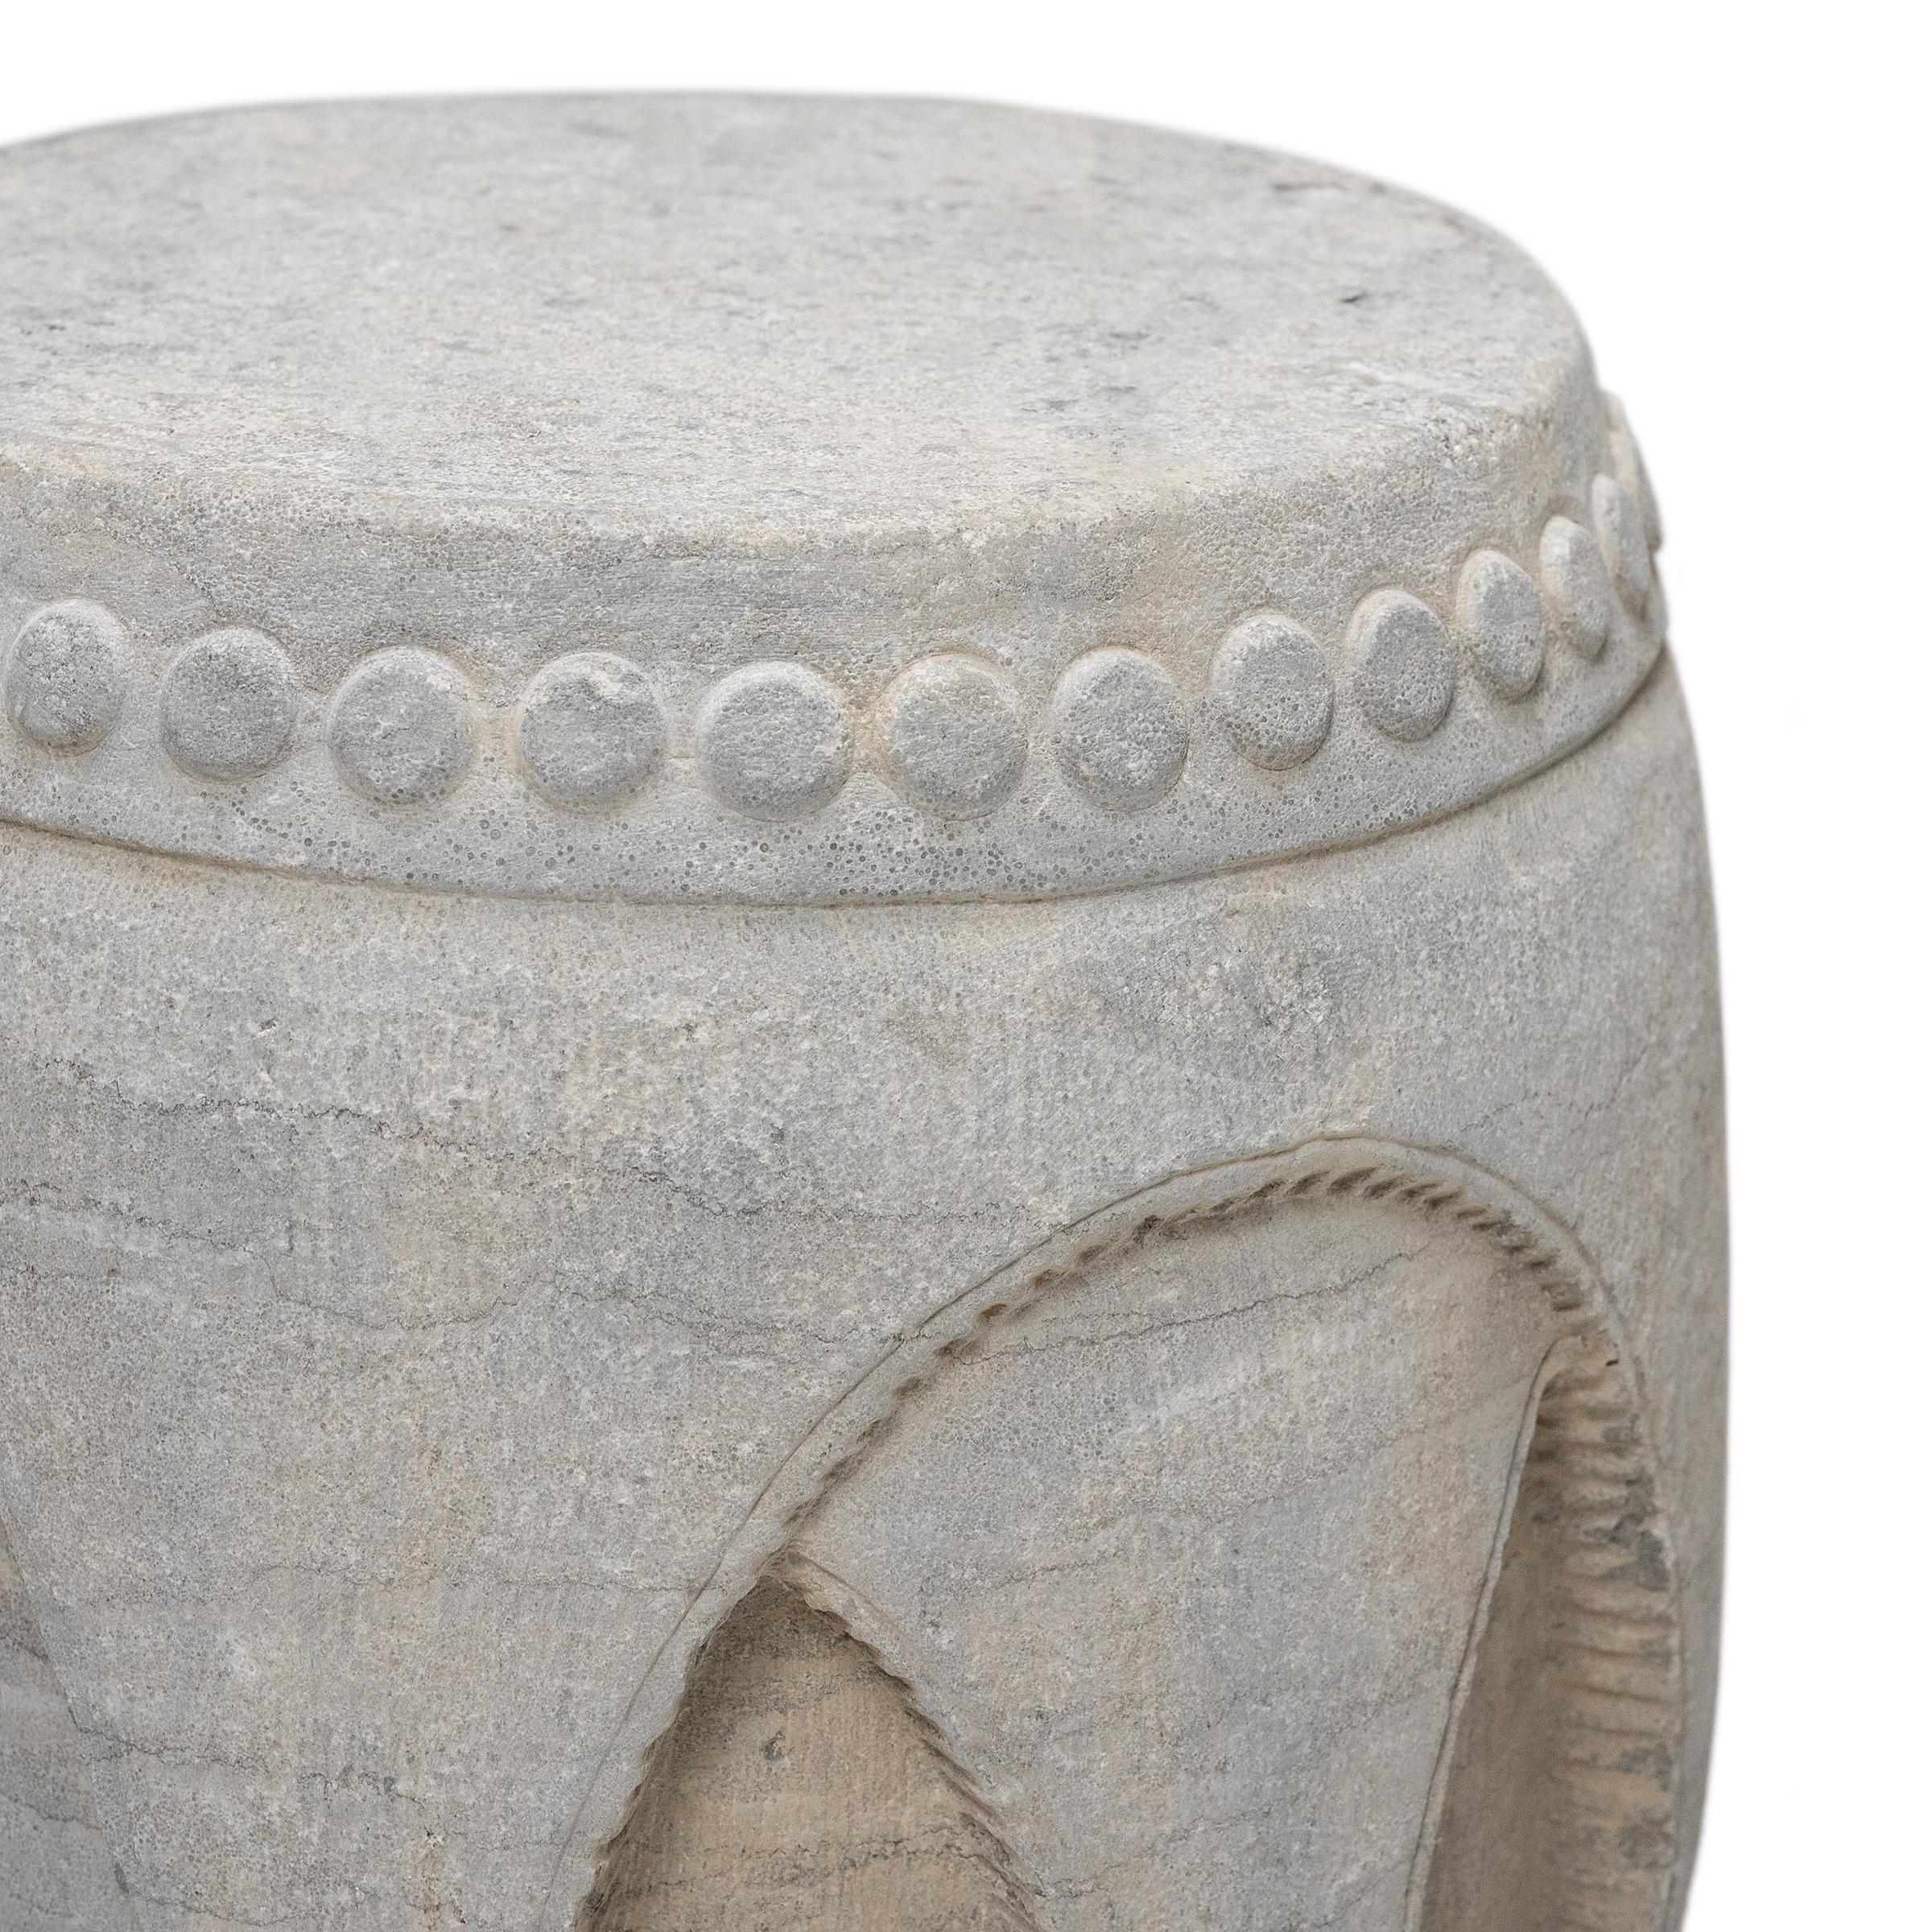 Carved Chinese Interlocking Stone Drum